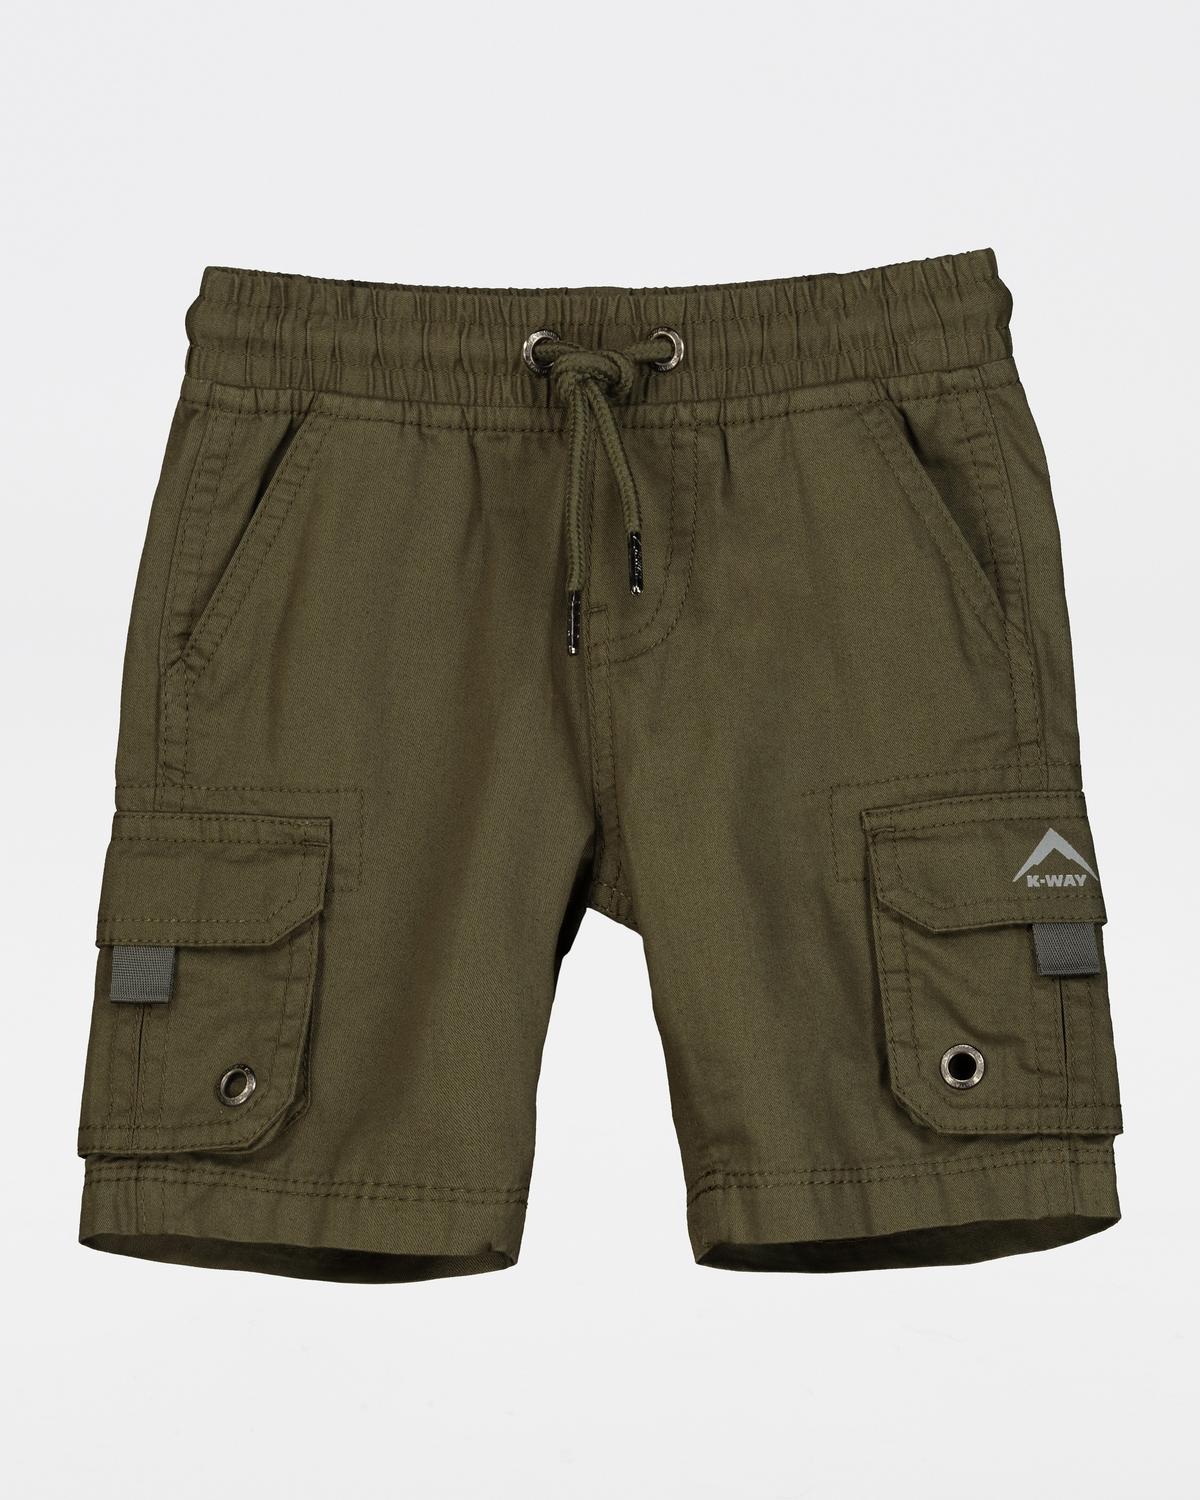 K-Way Kids Cargo Shorts -  Olive